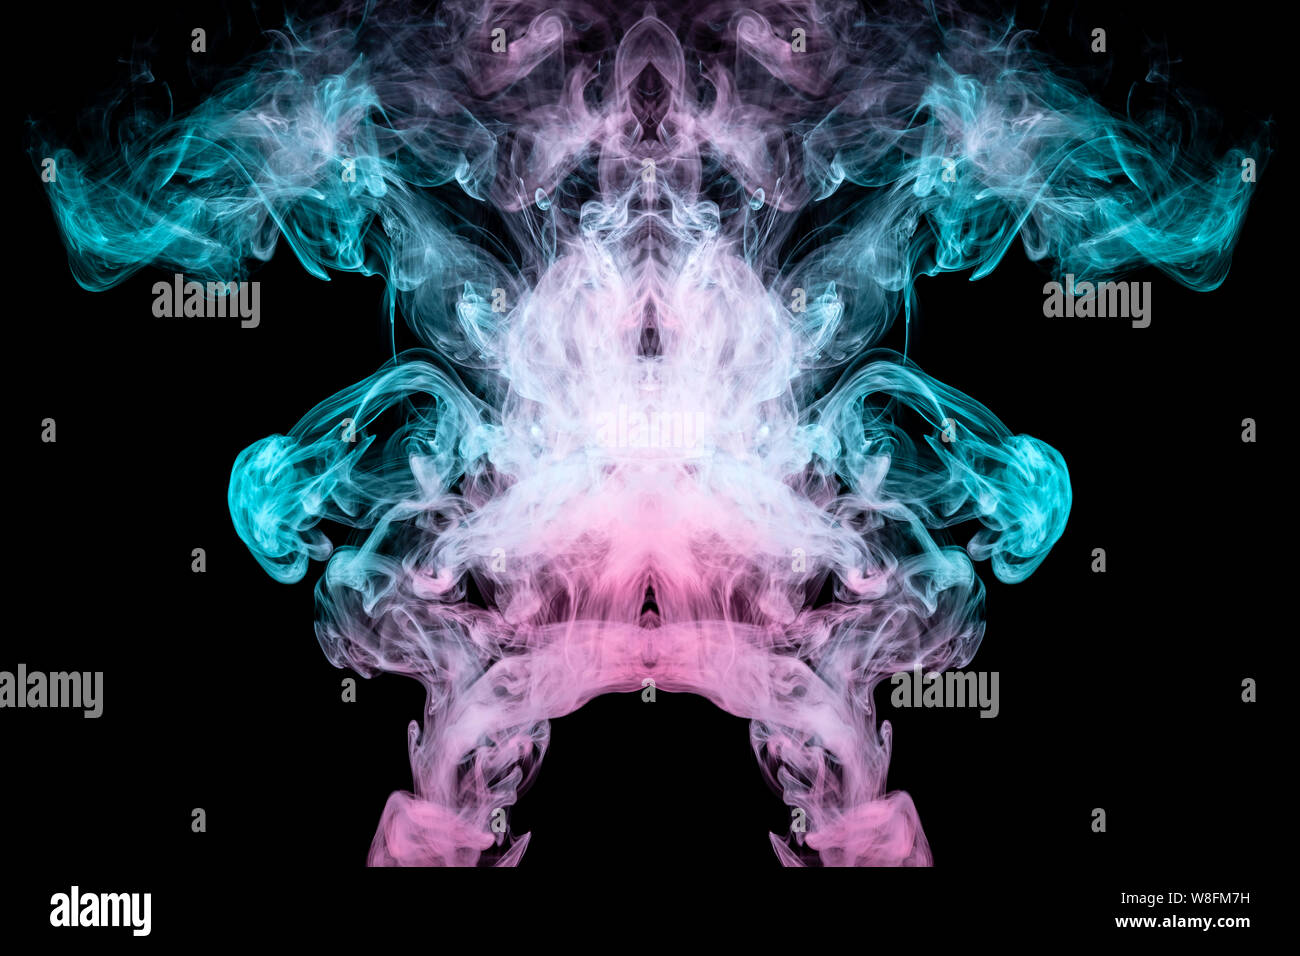 Resumen smoky patrón con una imagen mística de un fantasma con alas de humo  verde y rosa con su cabeza en la parte superior. Imprimir para la ropa  Fotografía de stock -